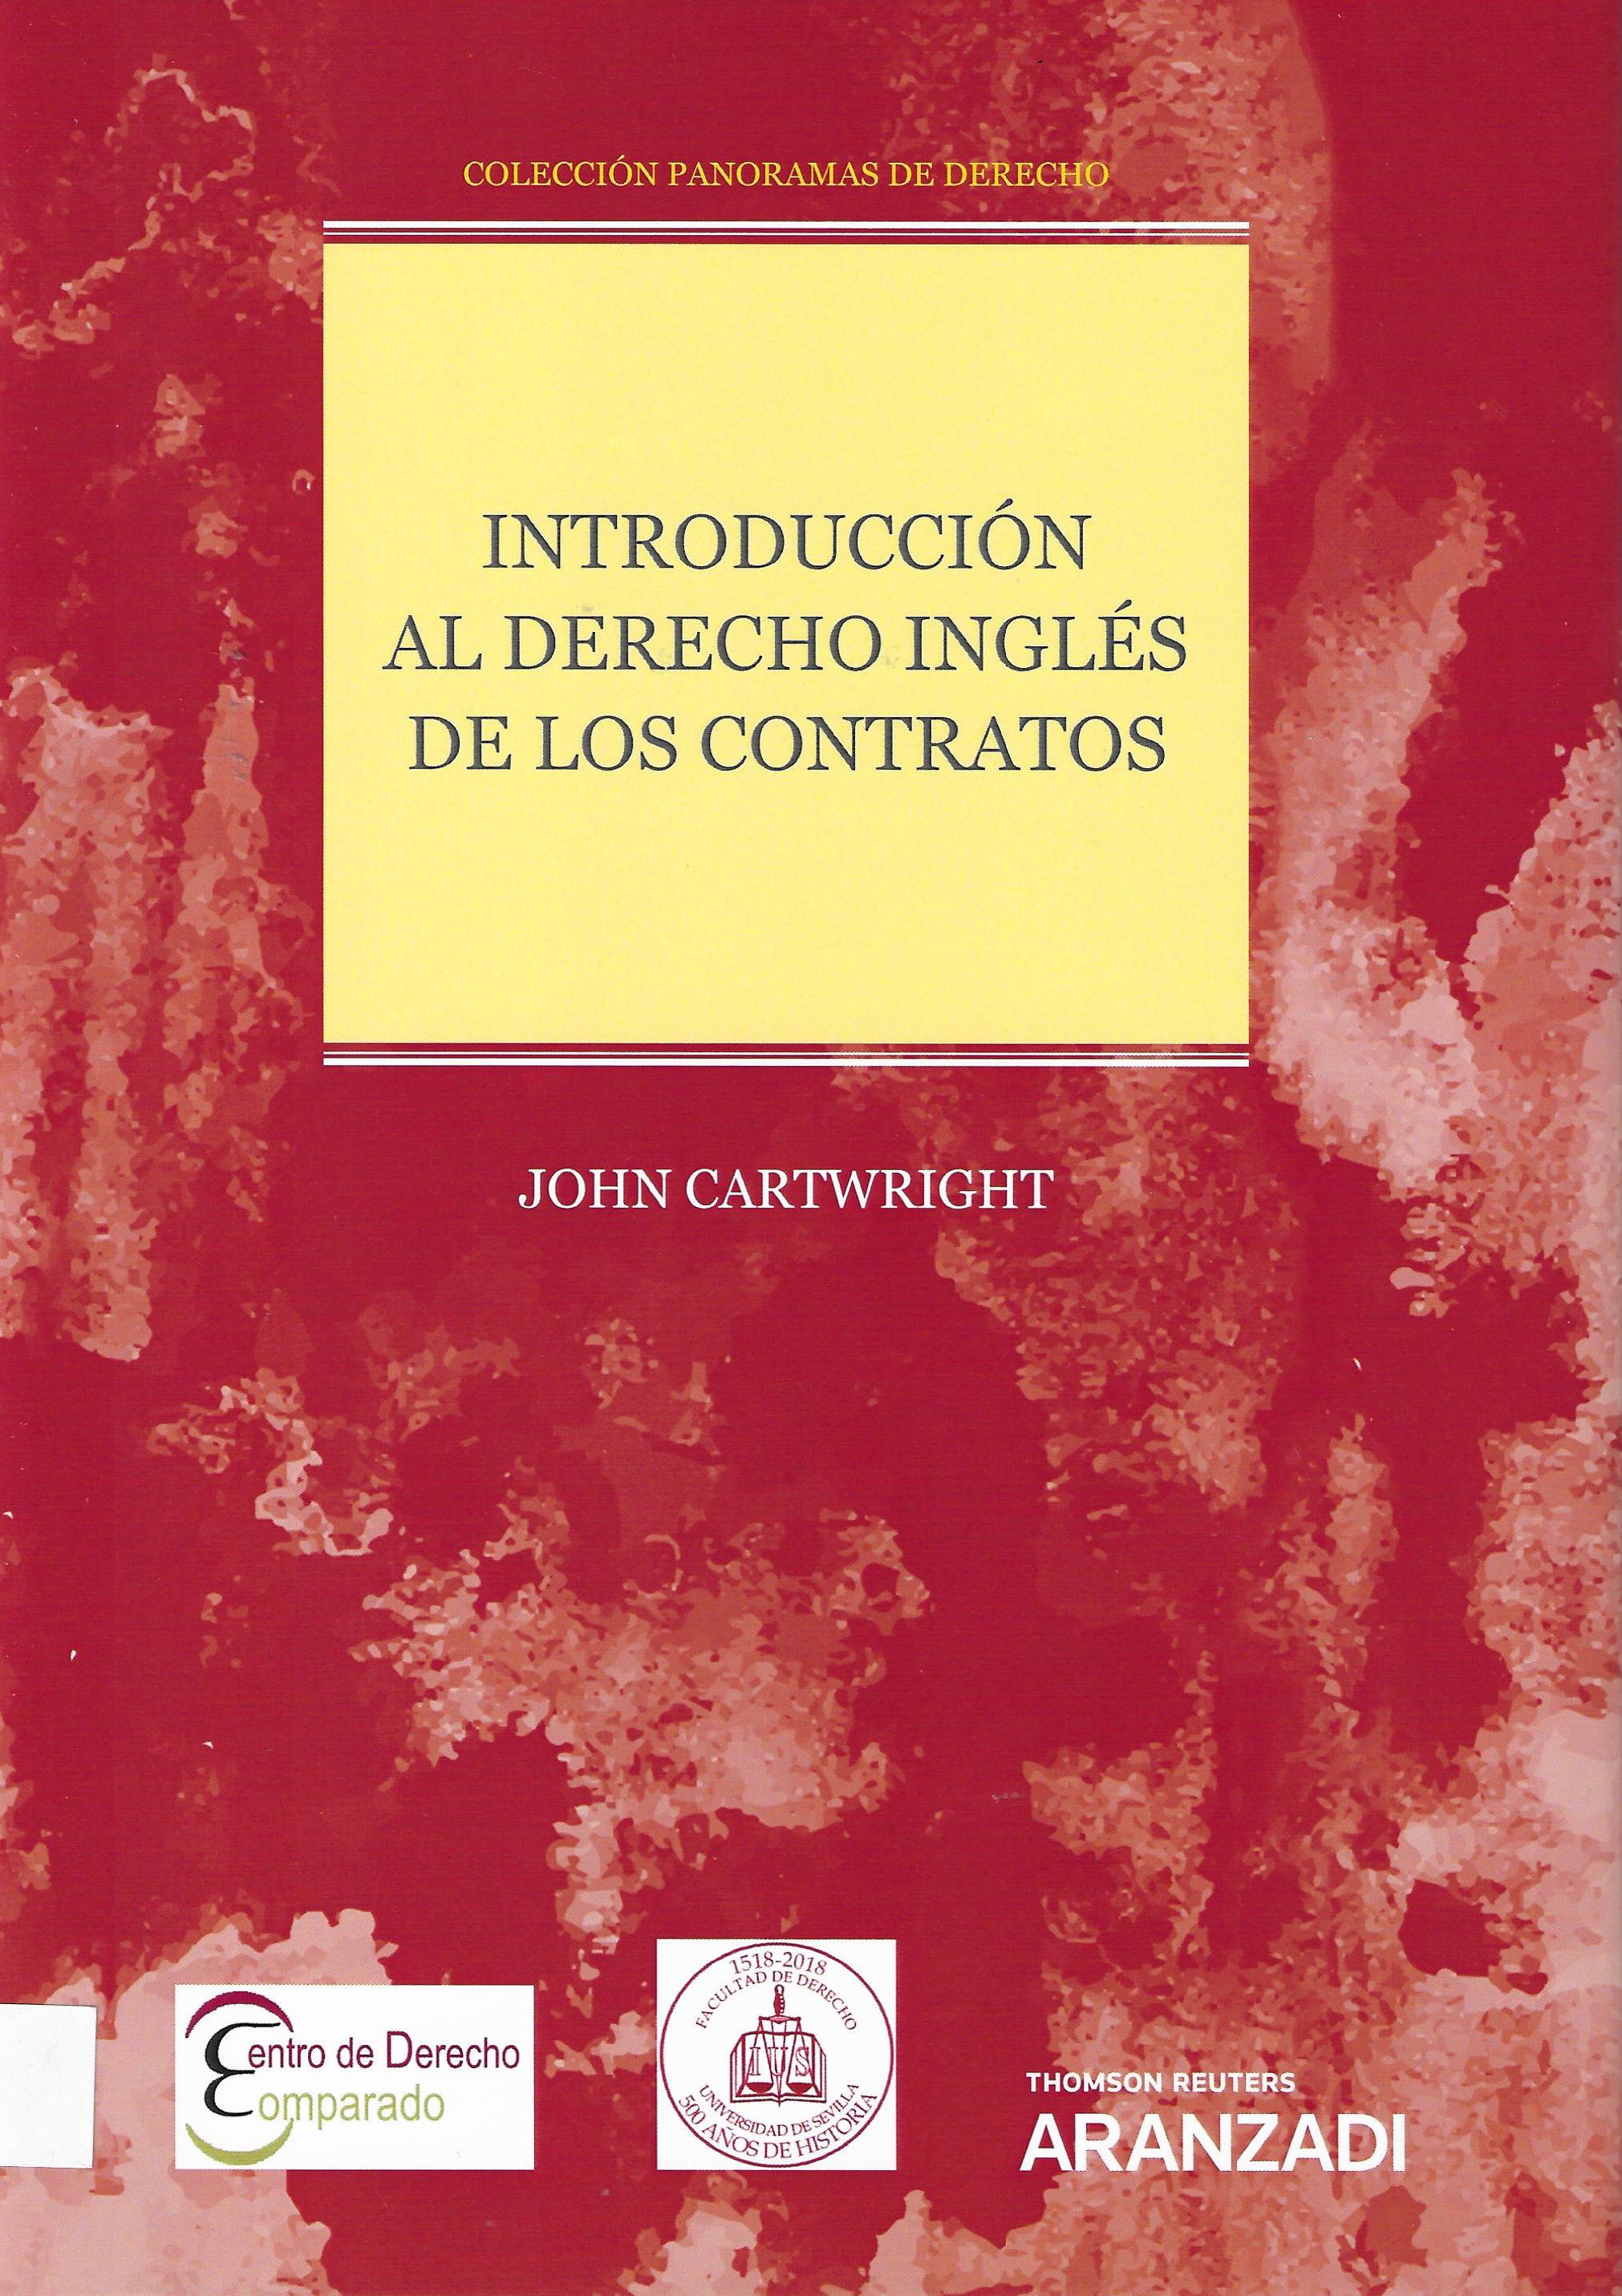 Imagen de portada del libro Introducción al derecho inglés de los contratos